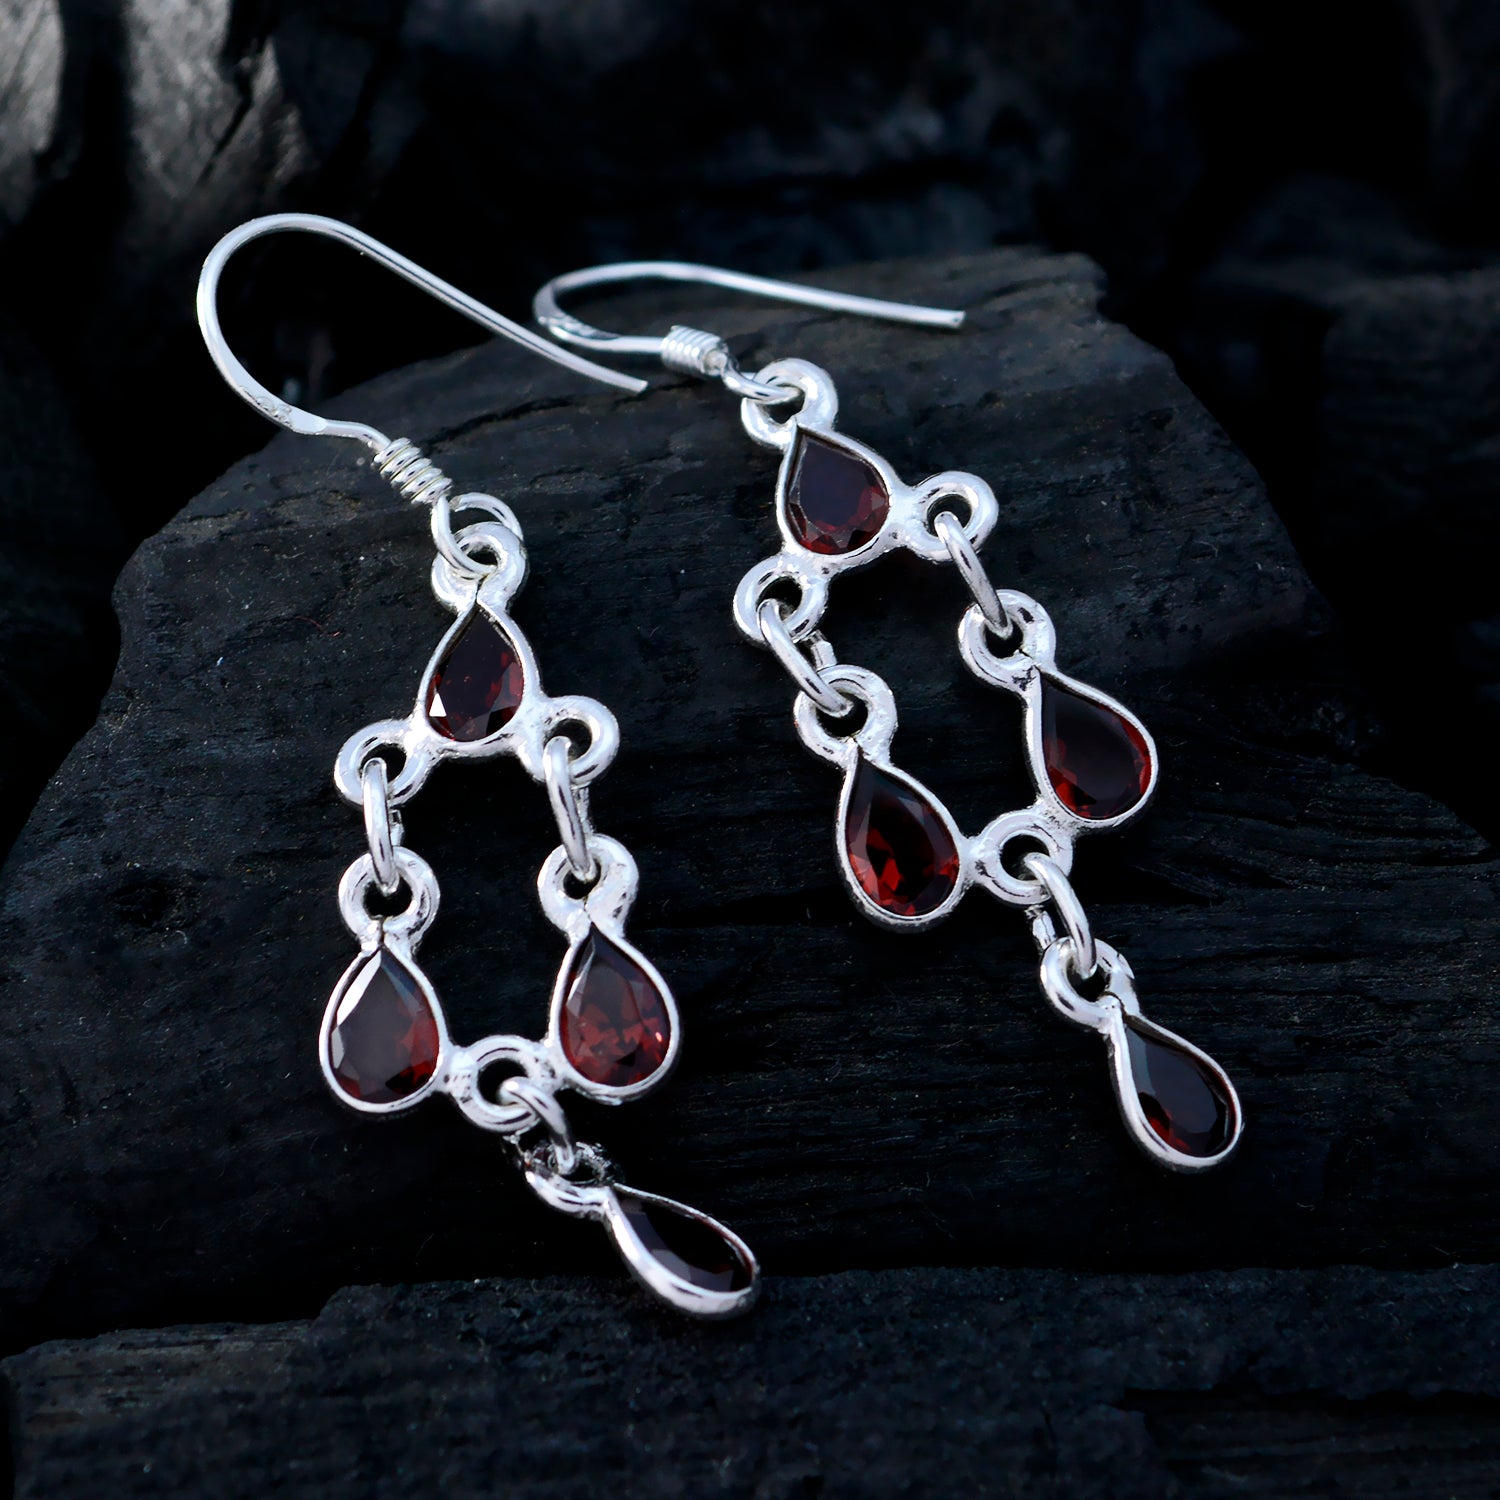 Riyo Real Gemstones pear Faceted Red Garnet Silver Earrings halloween gift